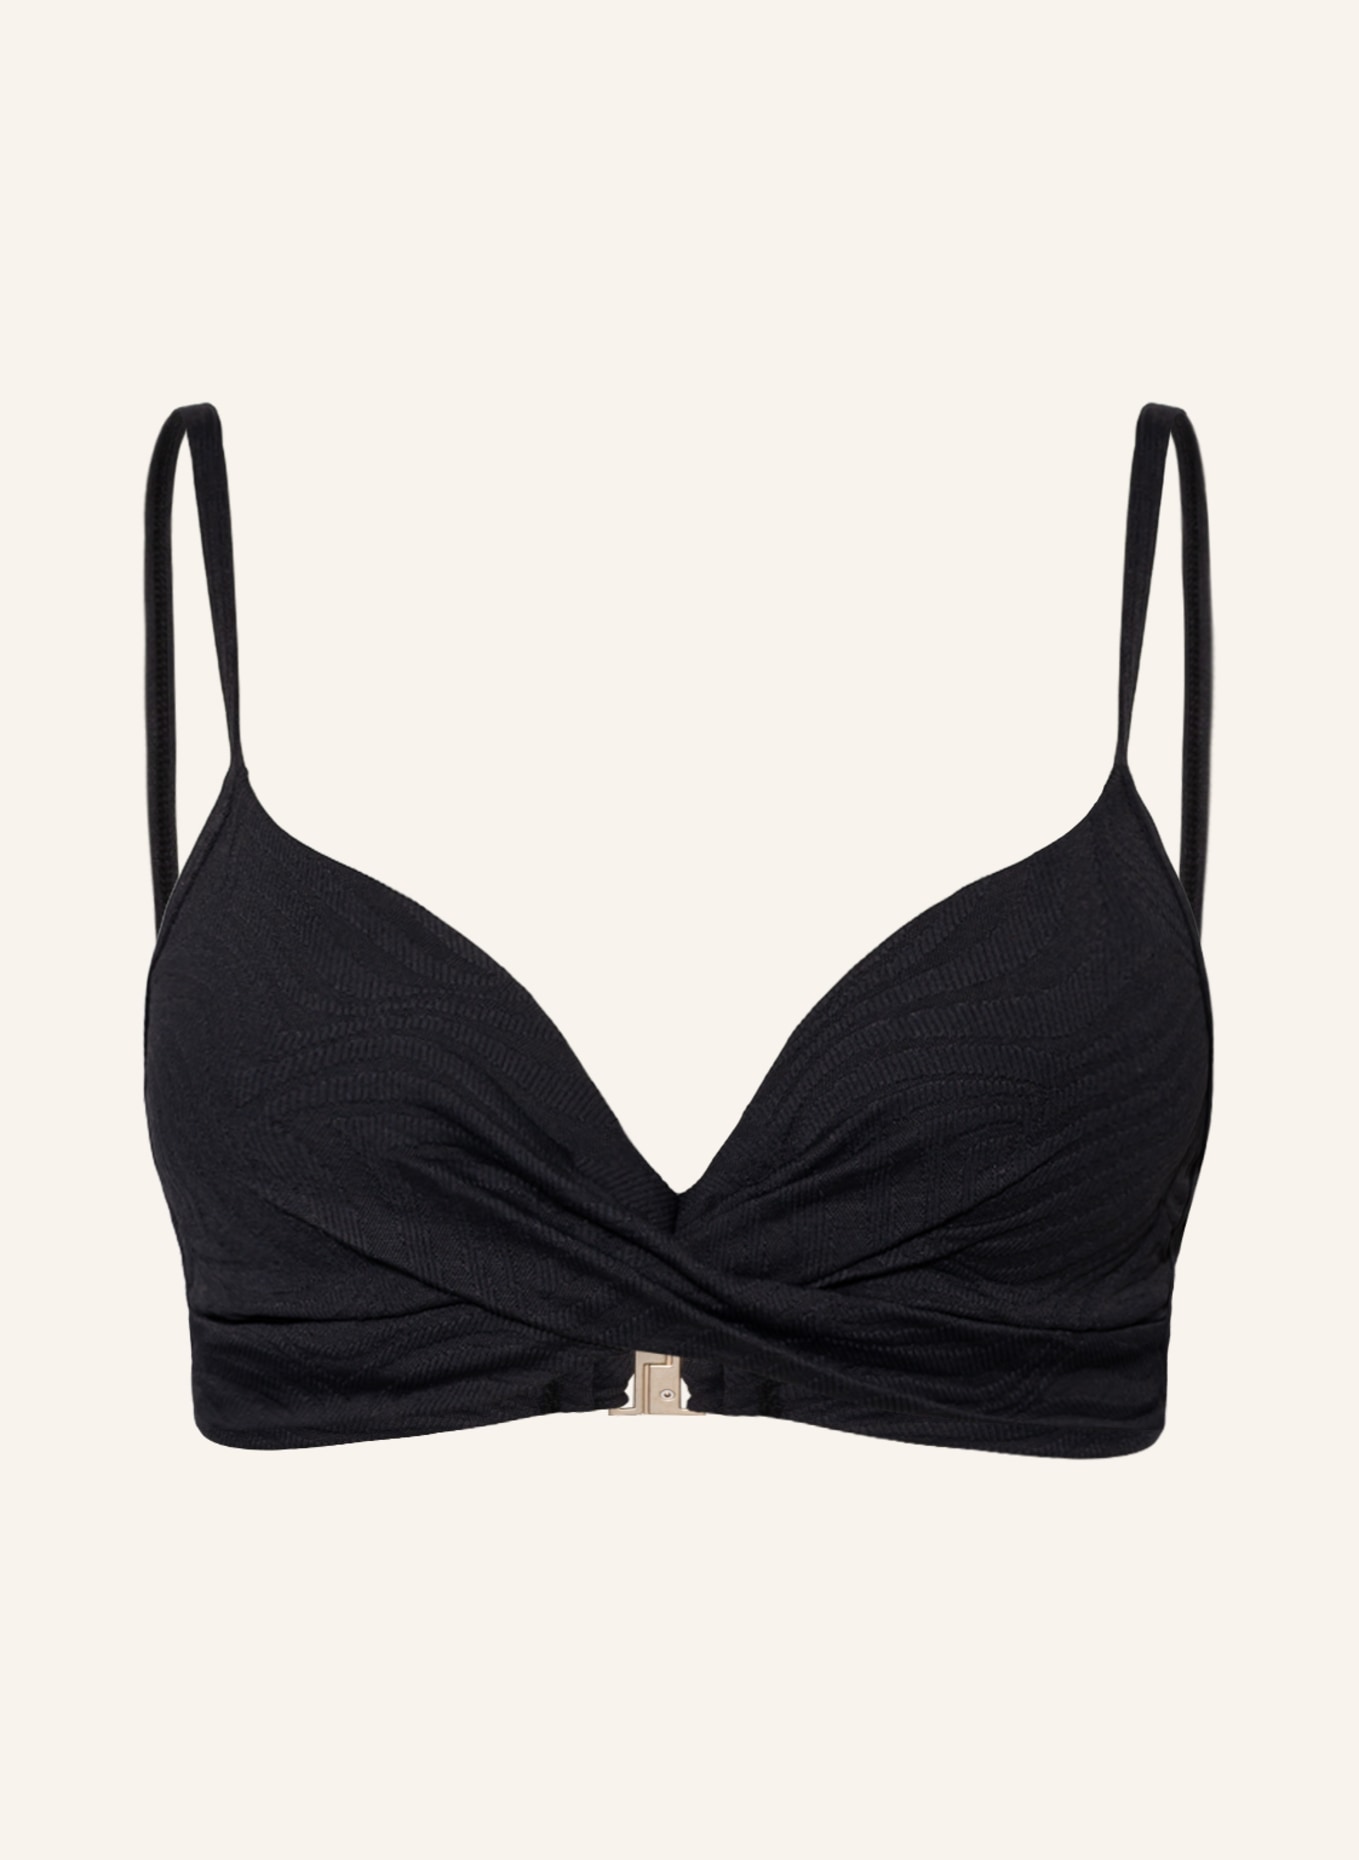 BEACHLIFE Bügel-Bikini-Top BLACK SWIRL, Farbe: SCHWARZ (Bild 1)